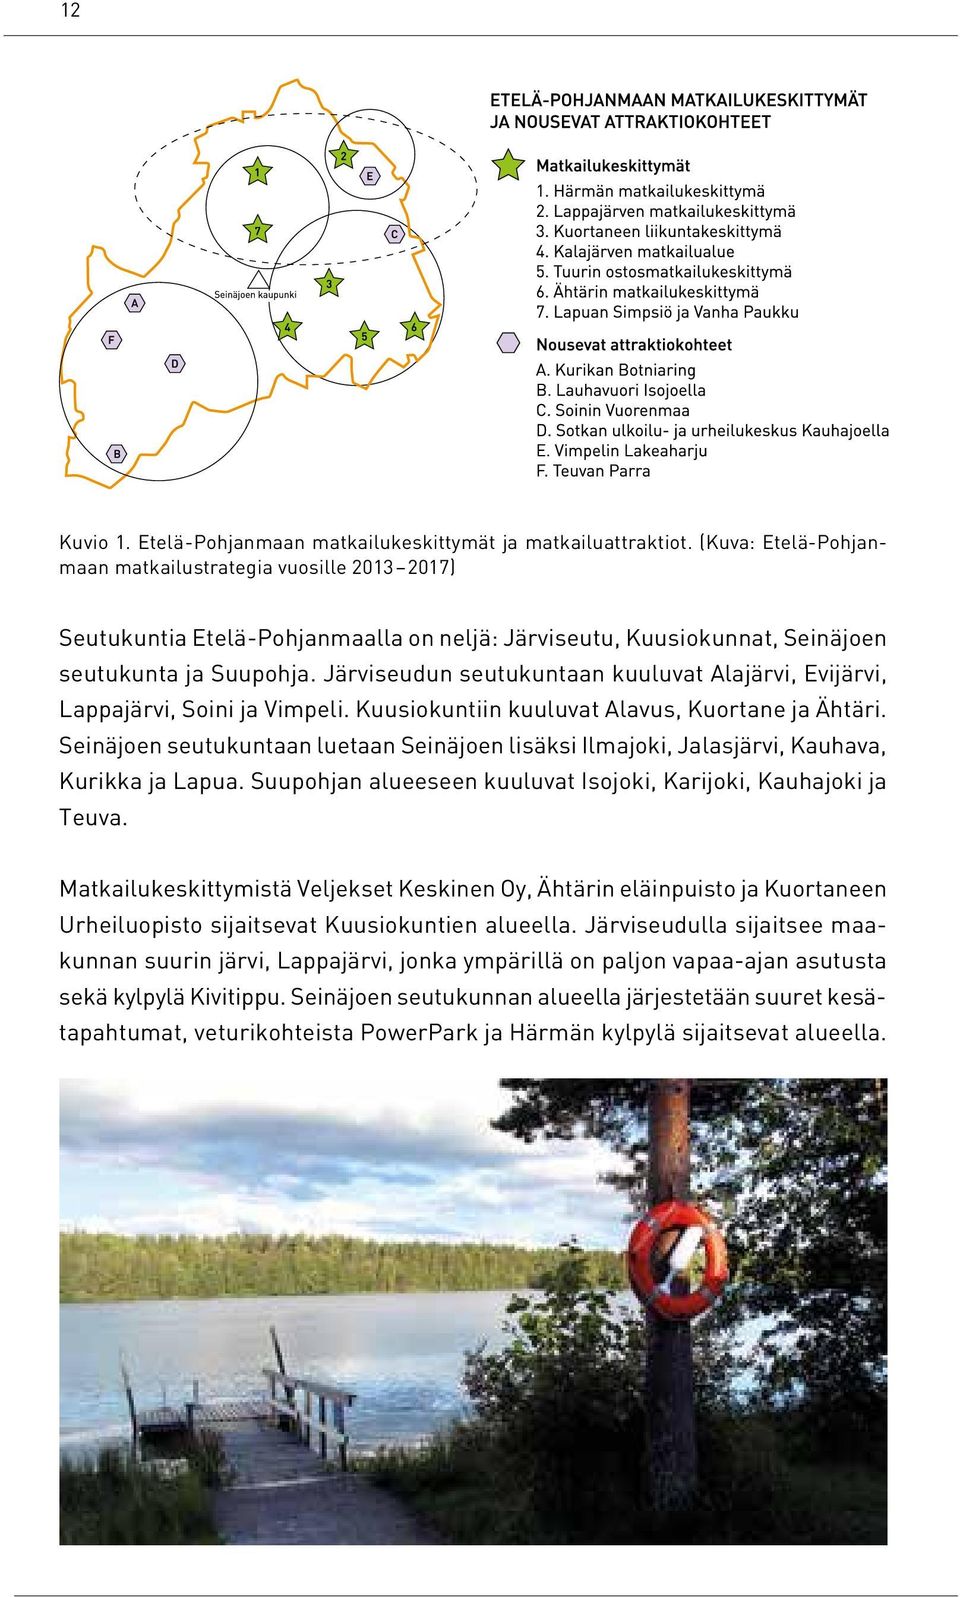 Järviseudun seutukuntaan kuuluvat Alajärvi, Evijärvi, Lappajärvi, Soini ja Vimpeli. Kuusiokuntiin kuuluvat Alavus, Kuortane ja Ähtäri.